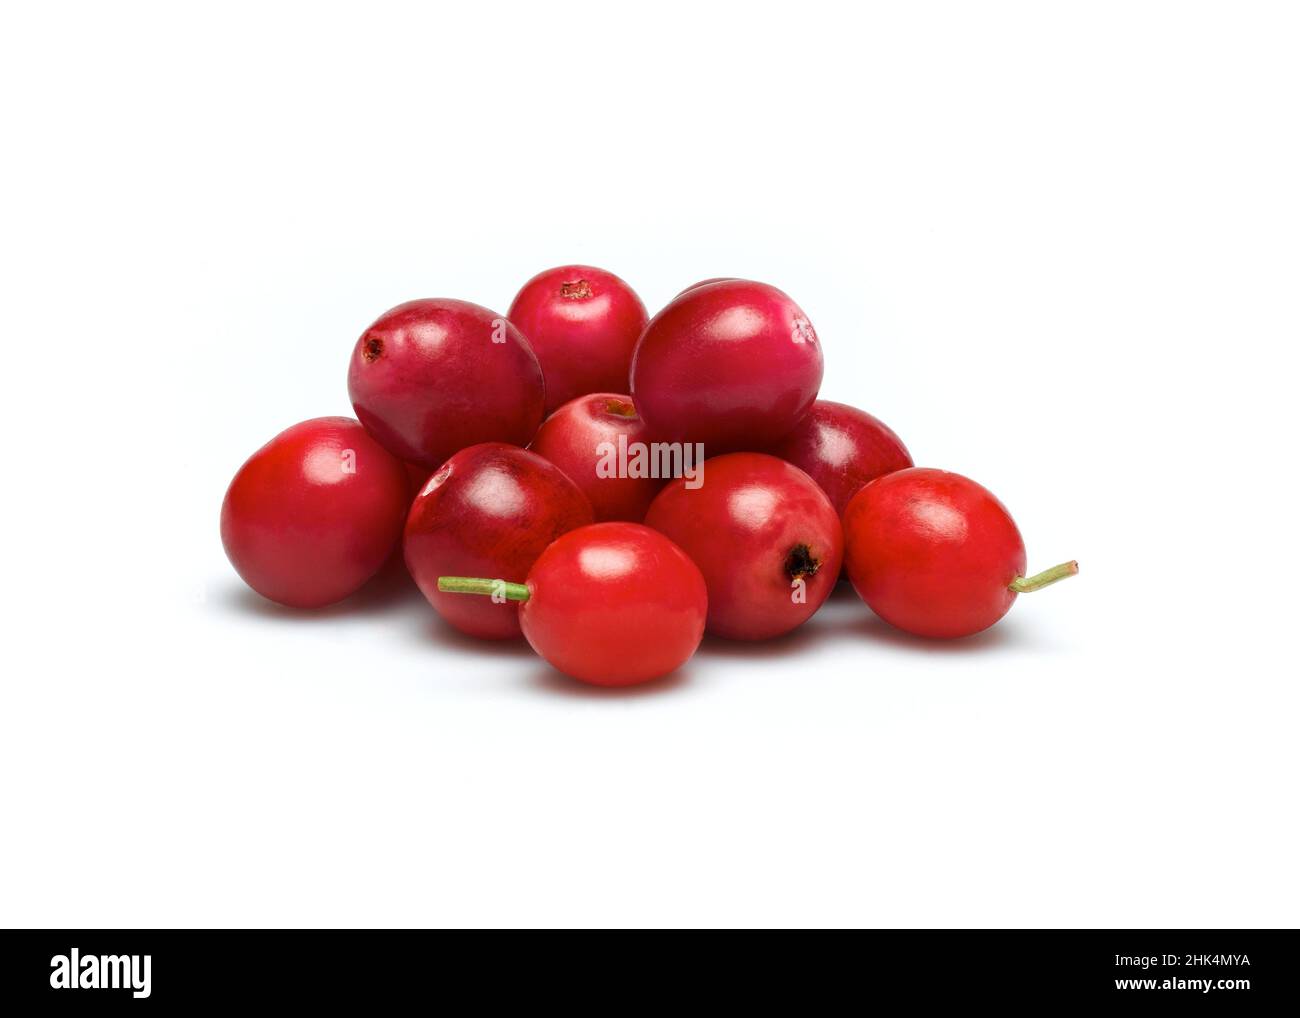 cranberries Stock Photo